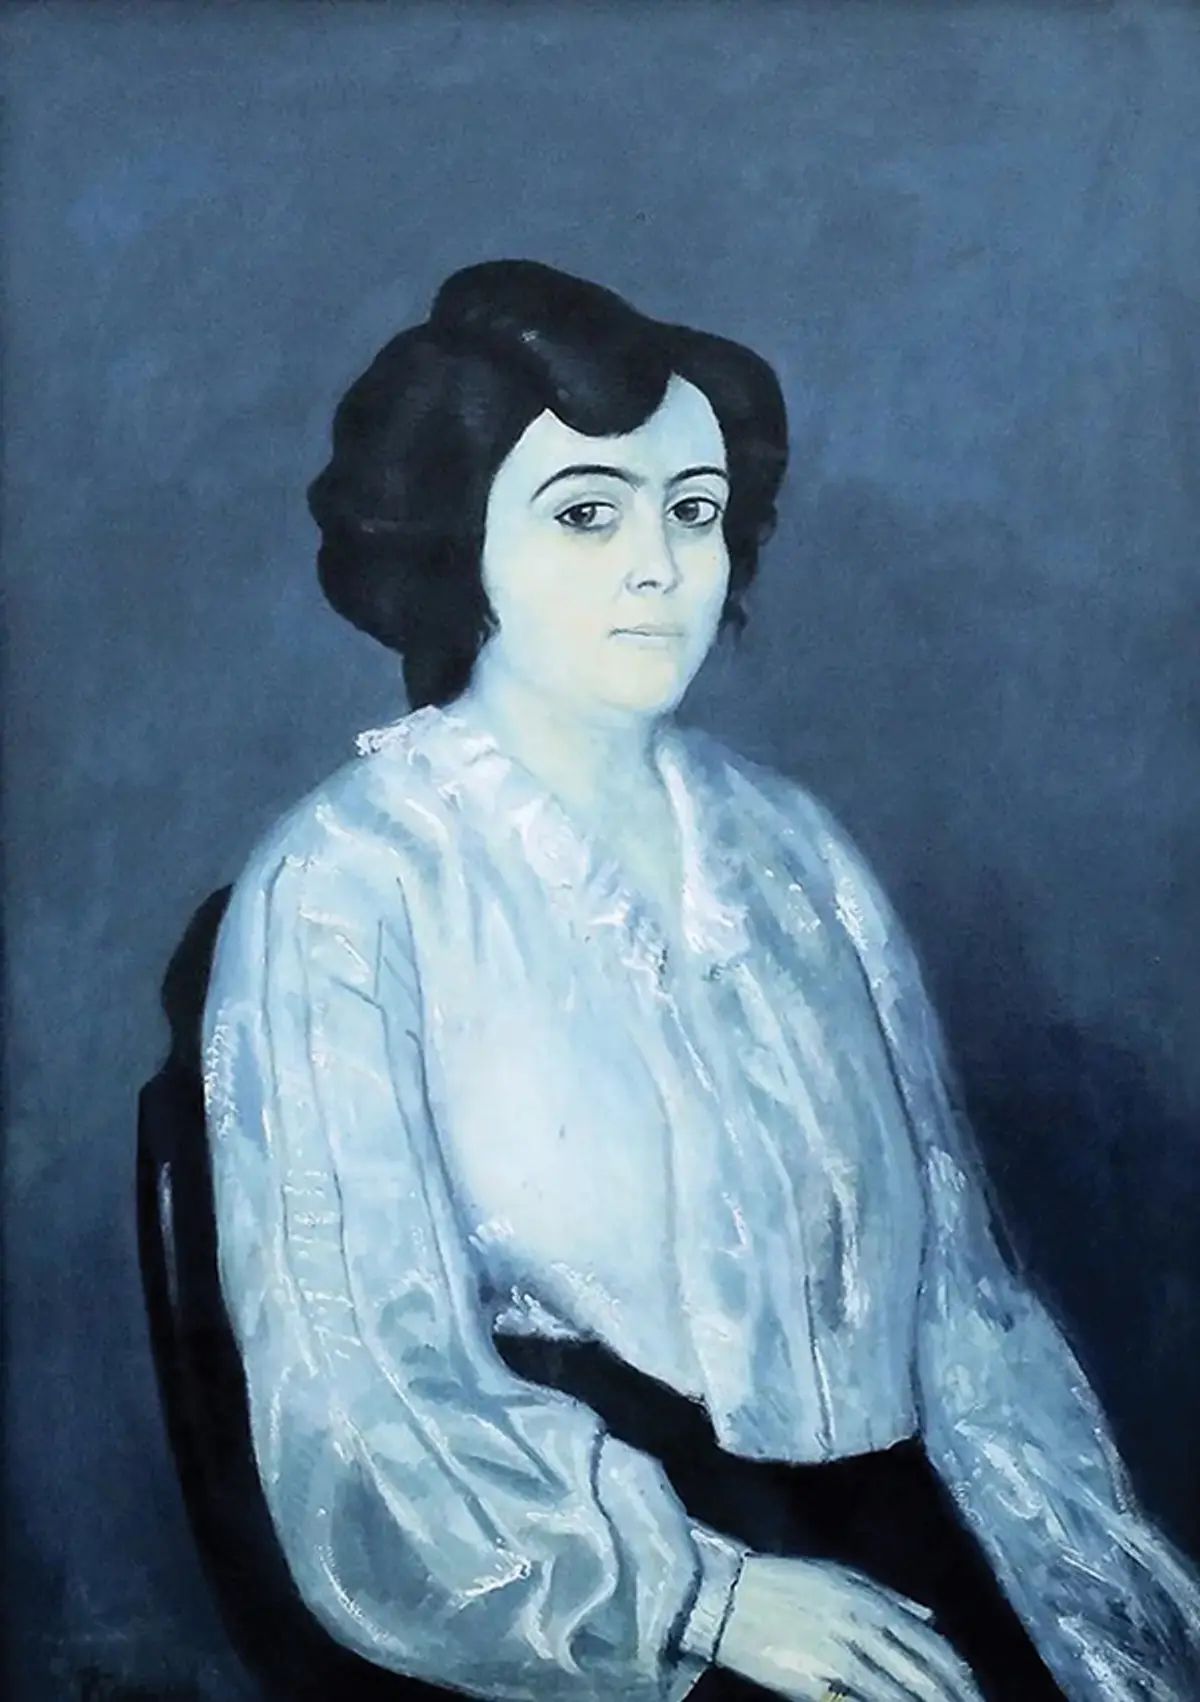 Le Portrait de Madame Soler (1903) de Pablo Picasso fait l’objet d’une plainte contre les Collections de peintures de l’État de Bavière. © Succession Picasso